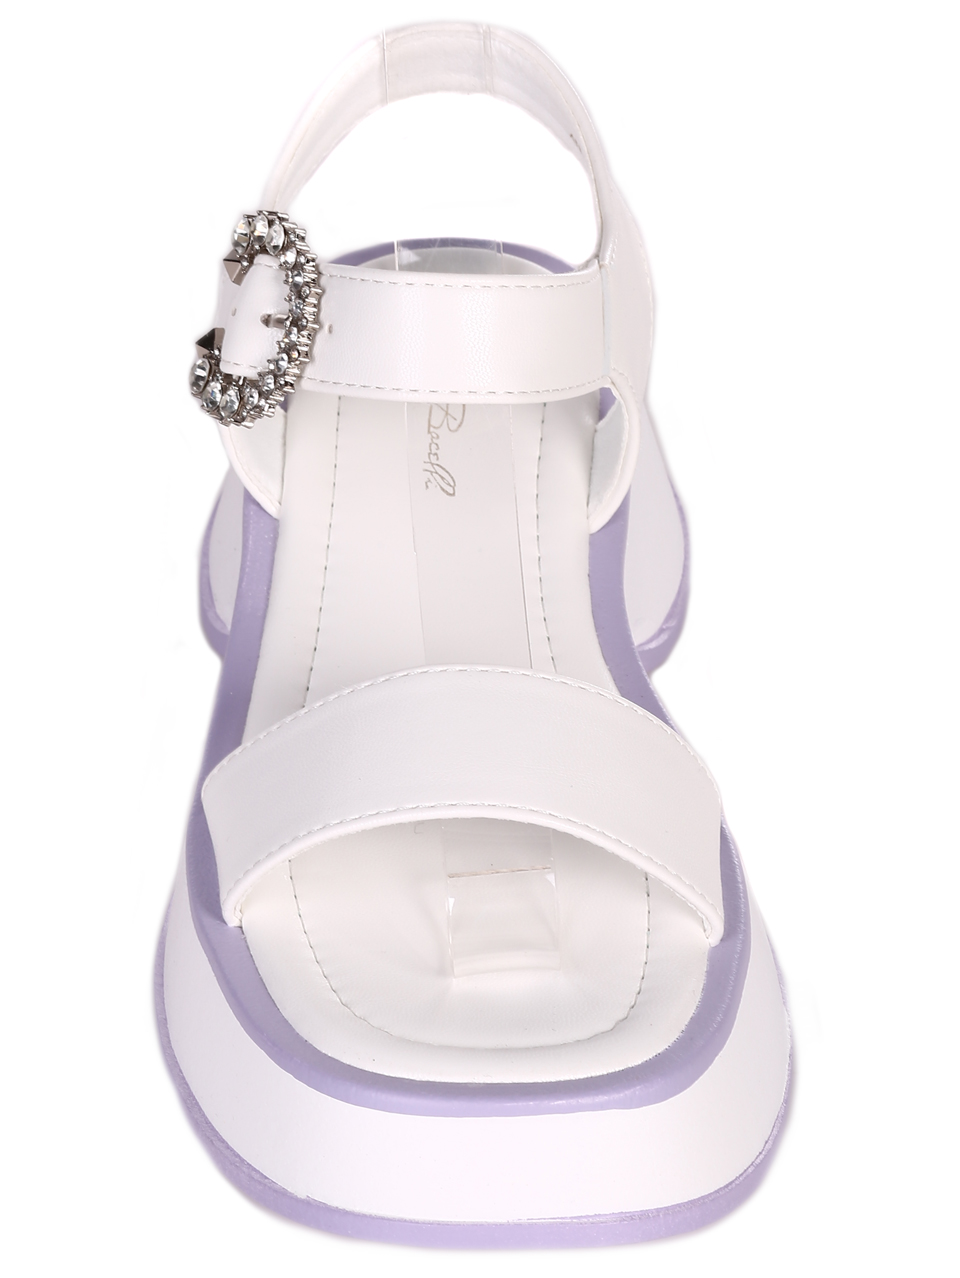 Ежедневни дамски сандали в бяло 4H-23106 white/purple